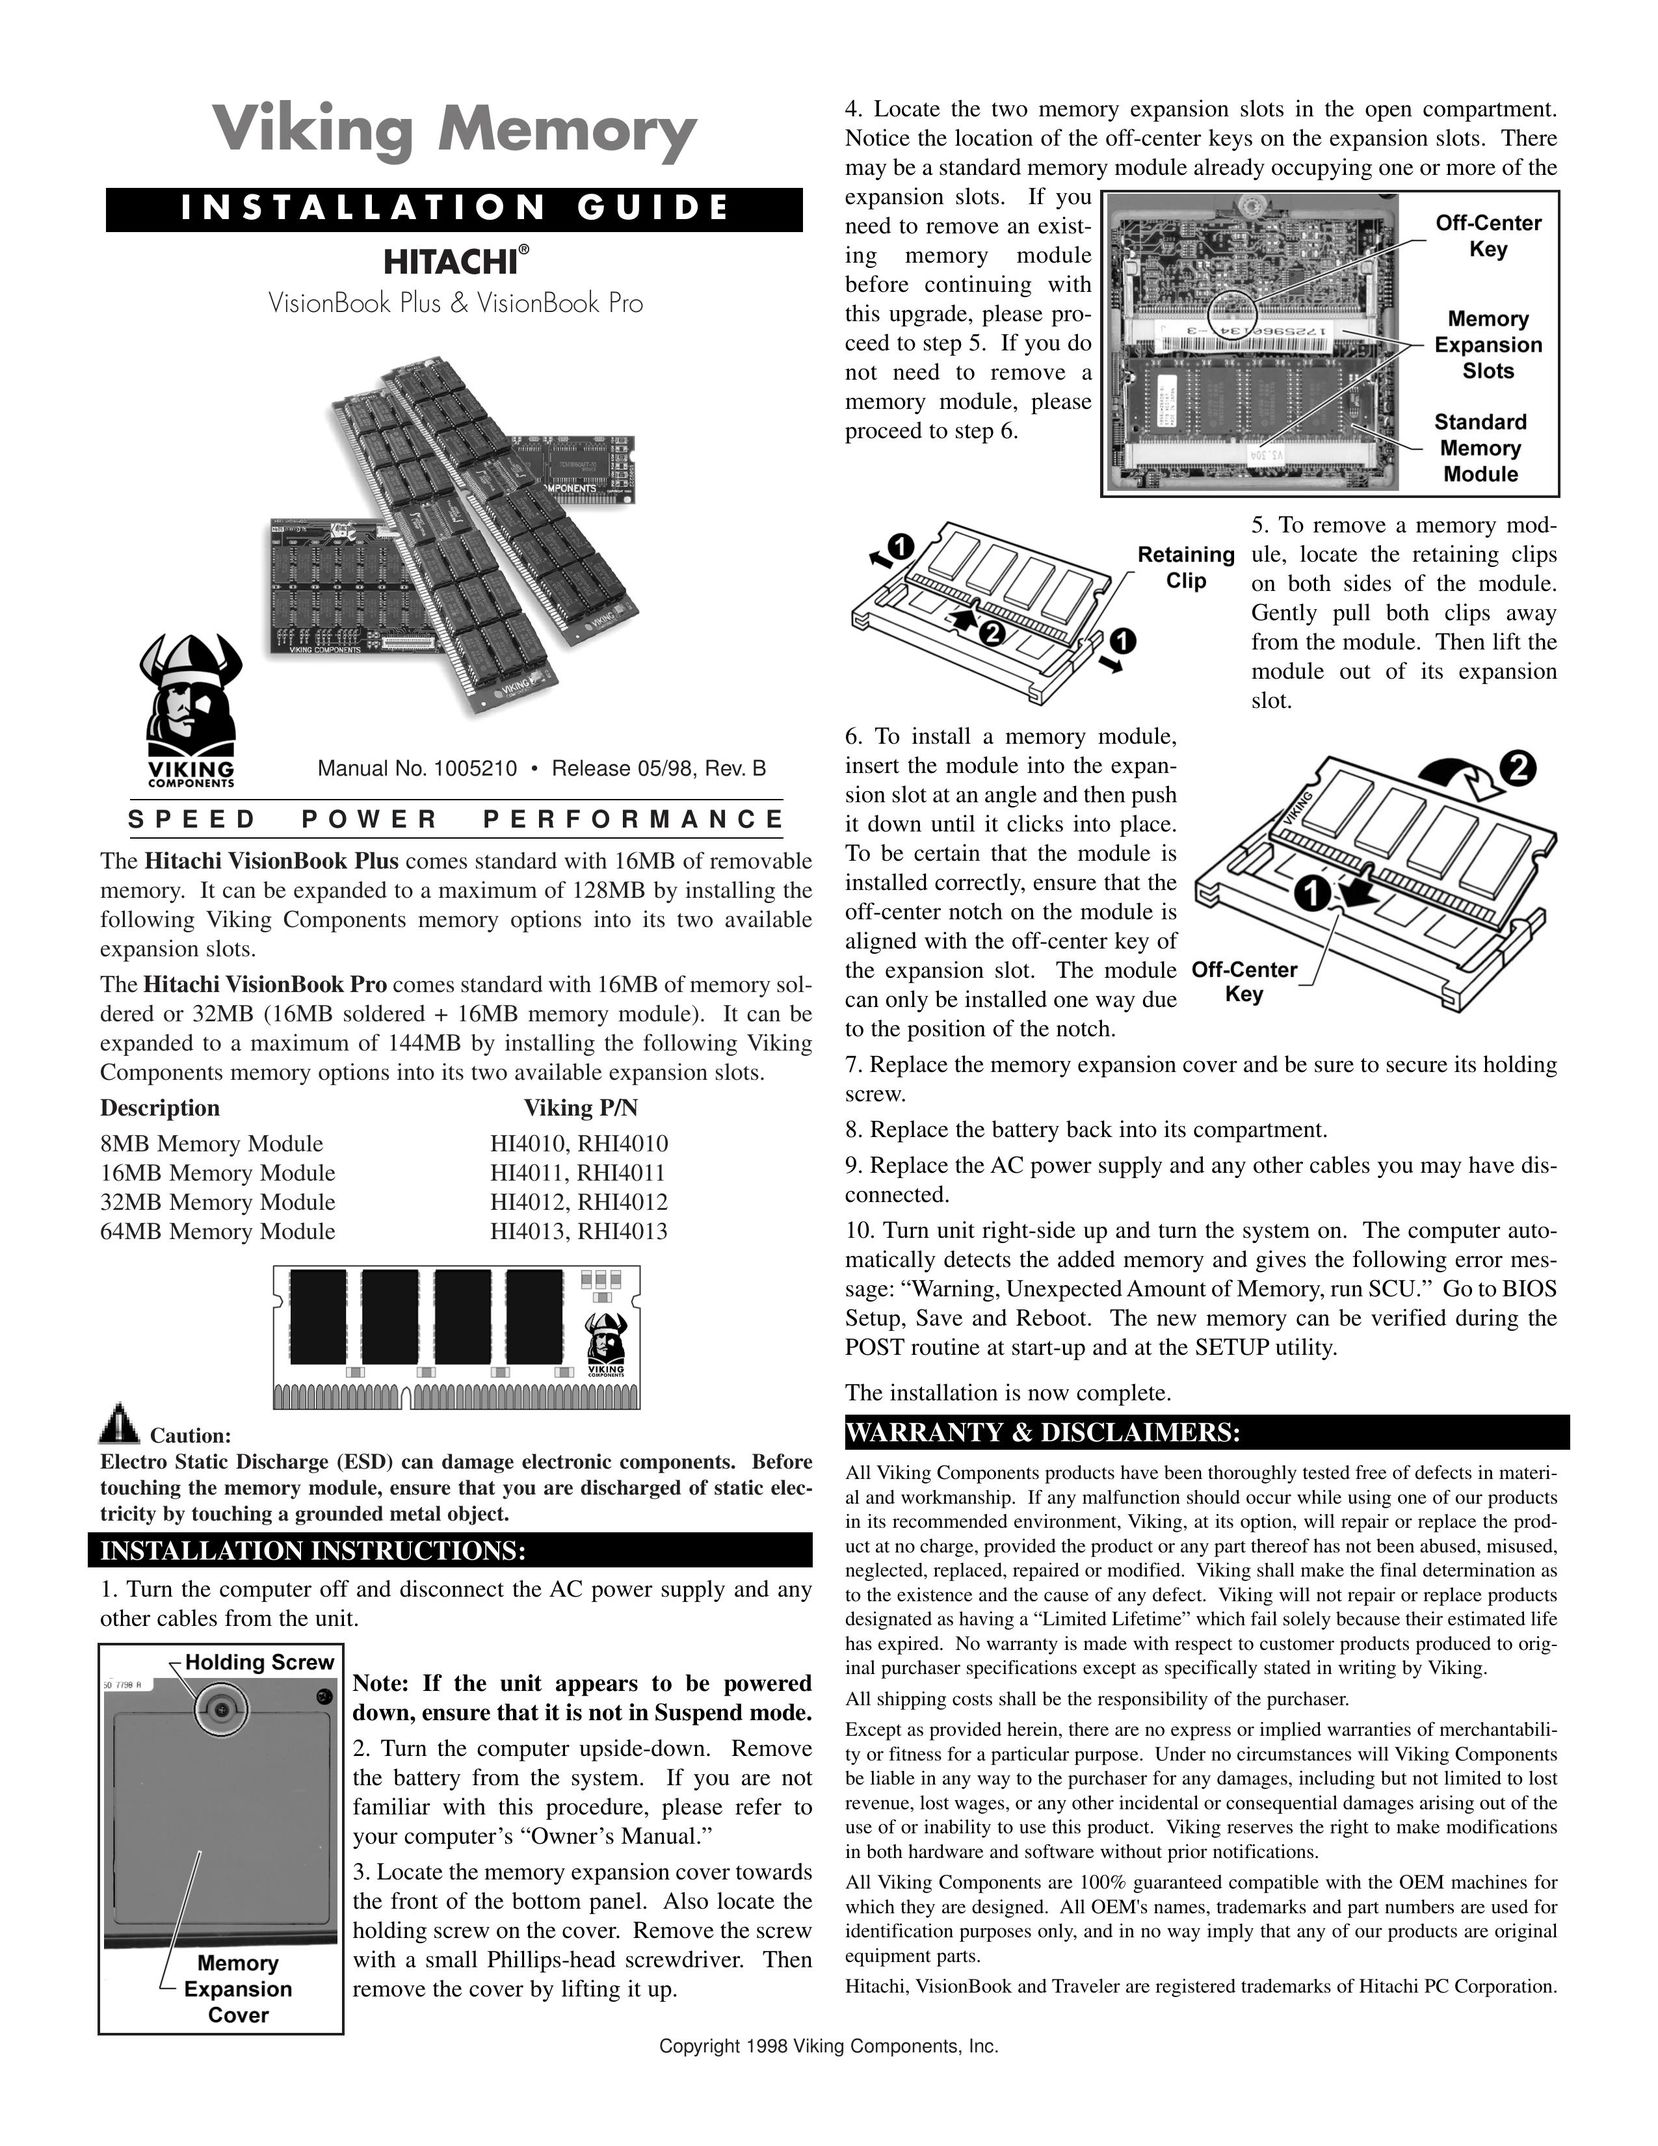 Viking 64MB Memory Module HI4013 Personal Computer User Manual